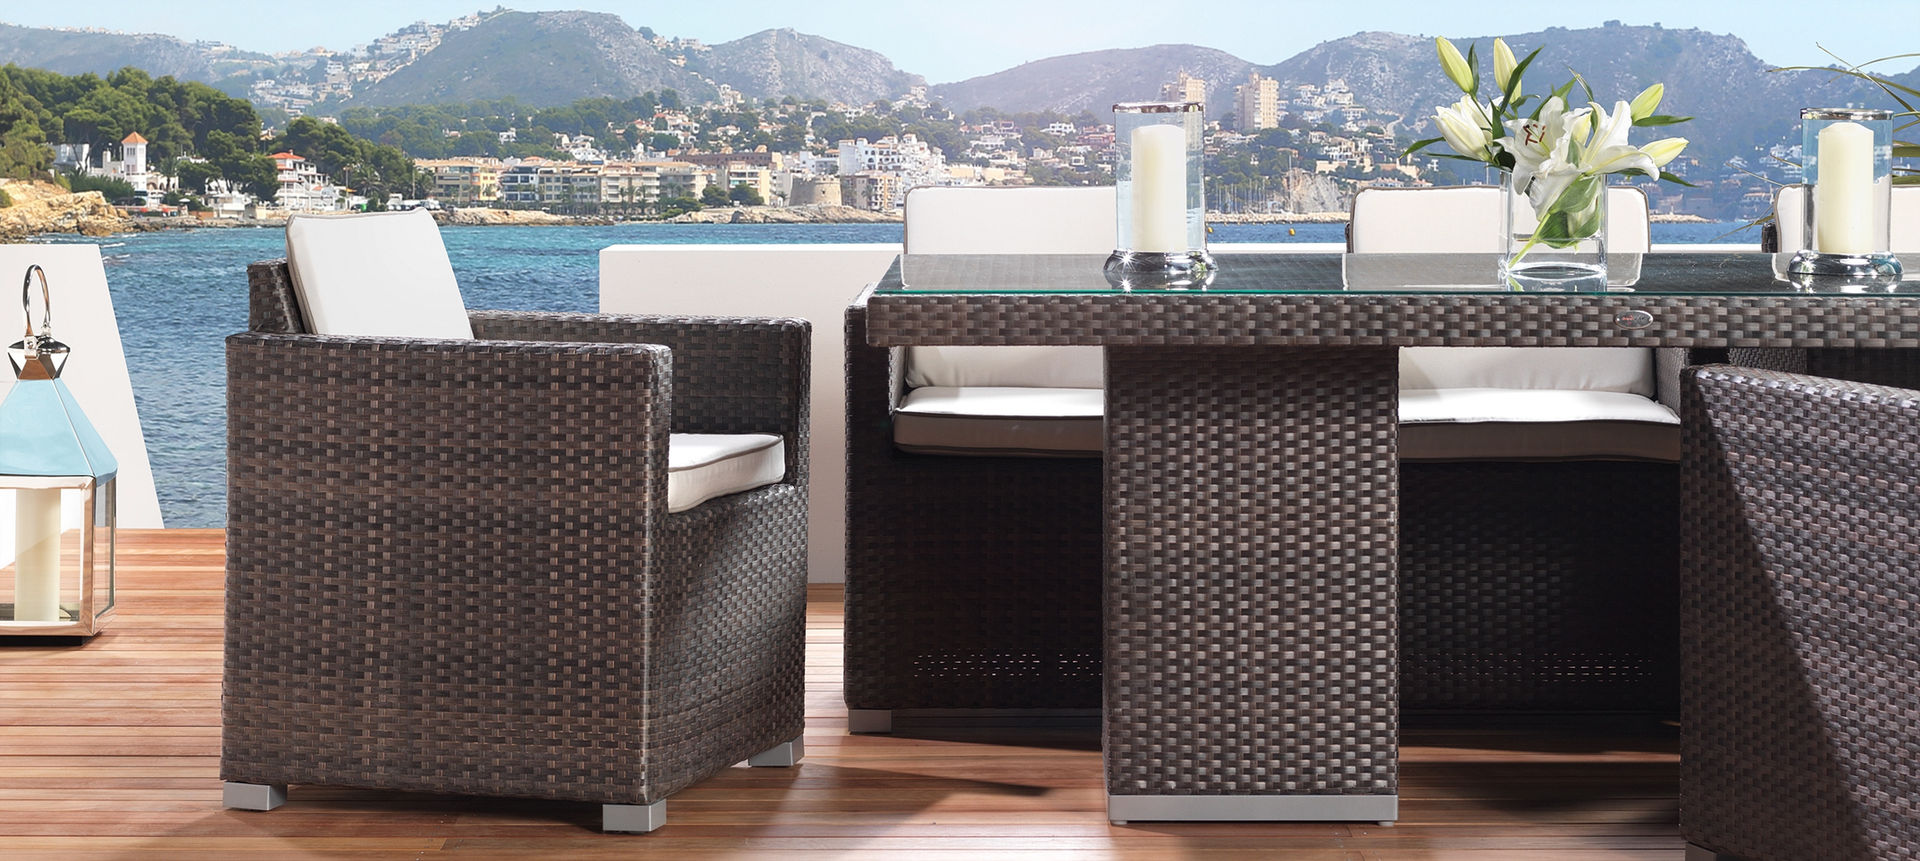 LuxDeco - The Riviera Collection - Dining Table LuxDeco Balcones y terrazas modernos: Ideas, imágenes y decoración Ratán/Mimbre Turquesa Muebles